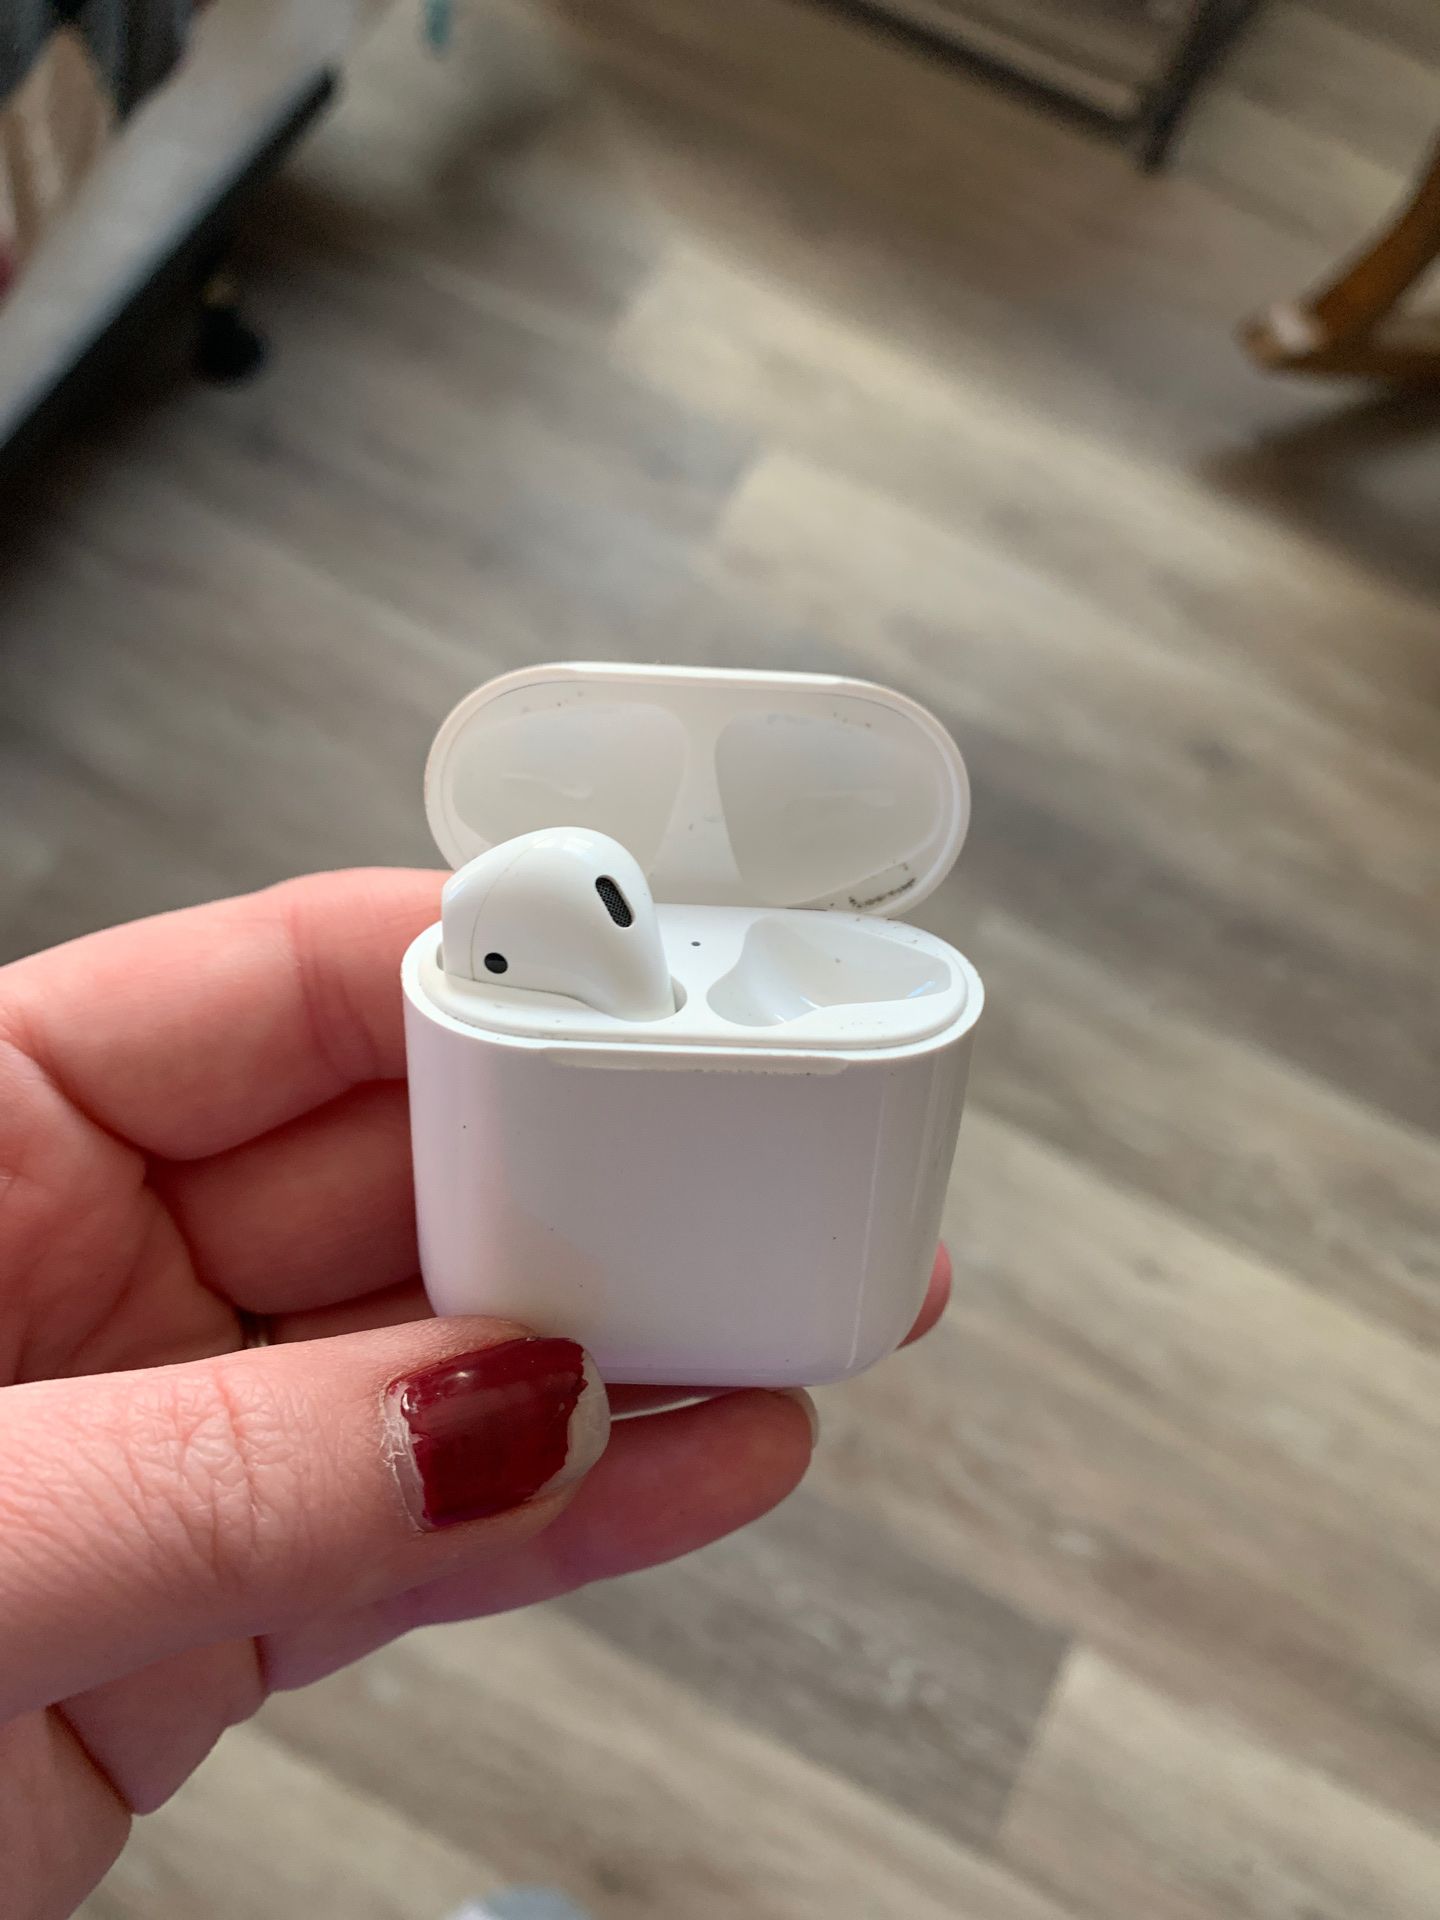 Apple air pod left ear